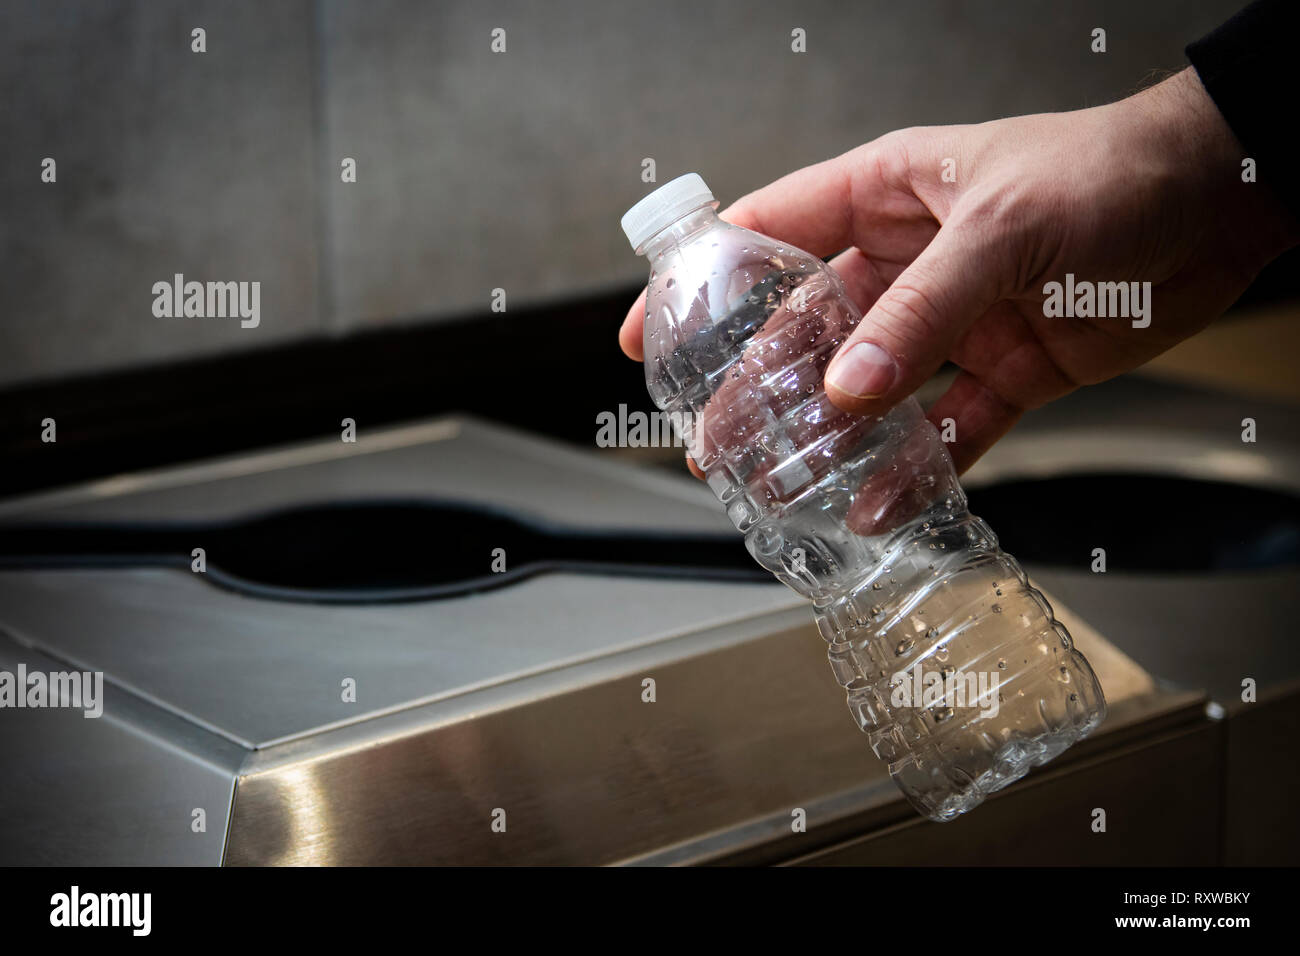 Jeter la bouteille d'eau en plastique jetables dans la corbeille ou bac de recyclage. Banque D'Images